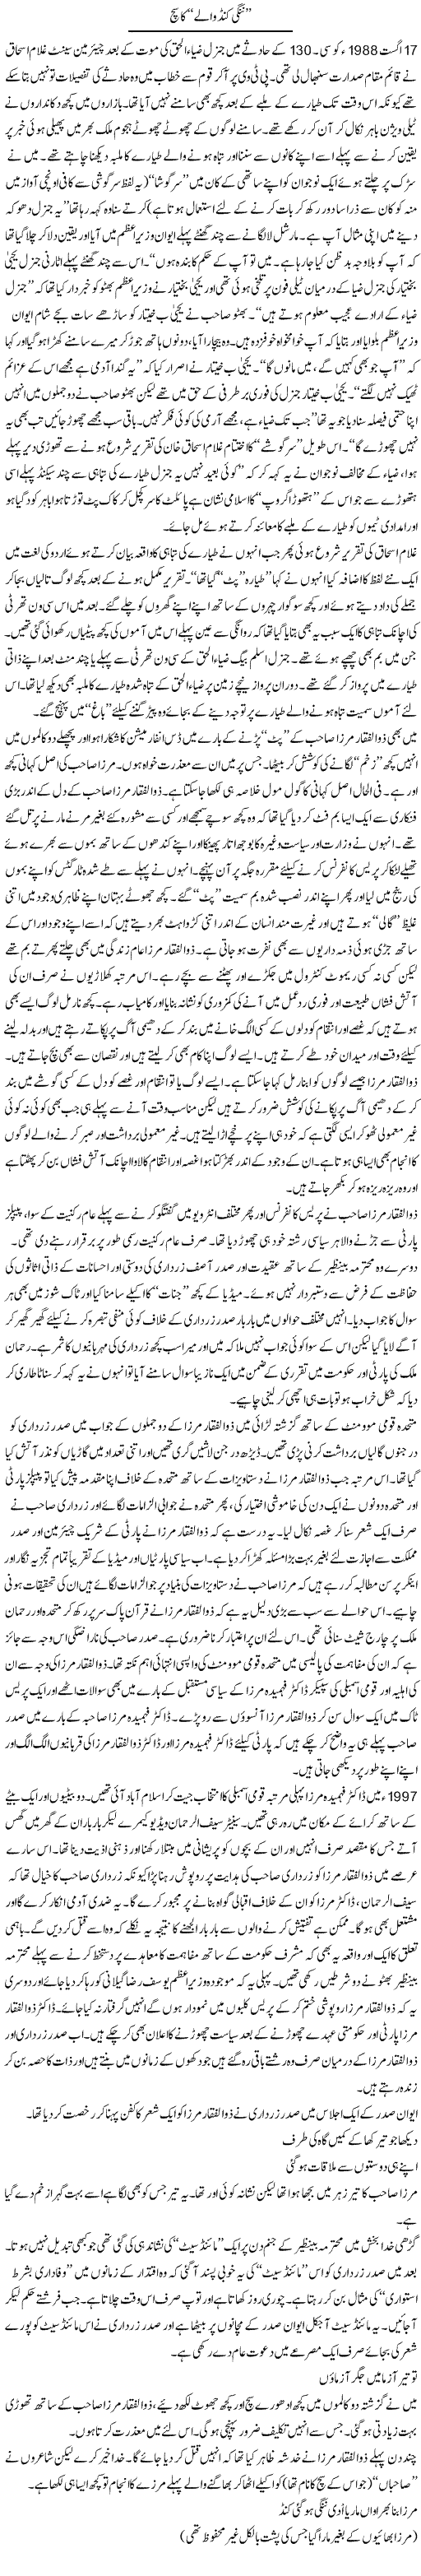 Ghulam Ishaq Express Column Abbas Athar 3 September 2011